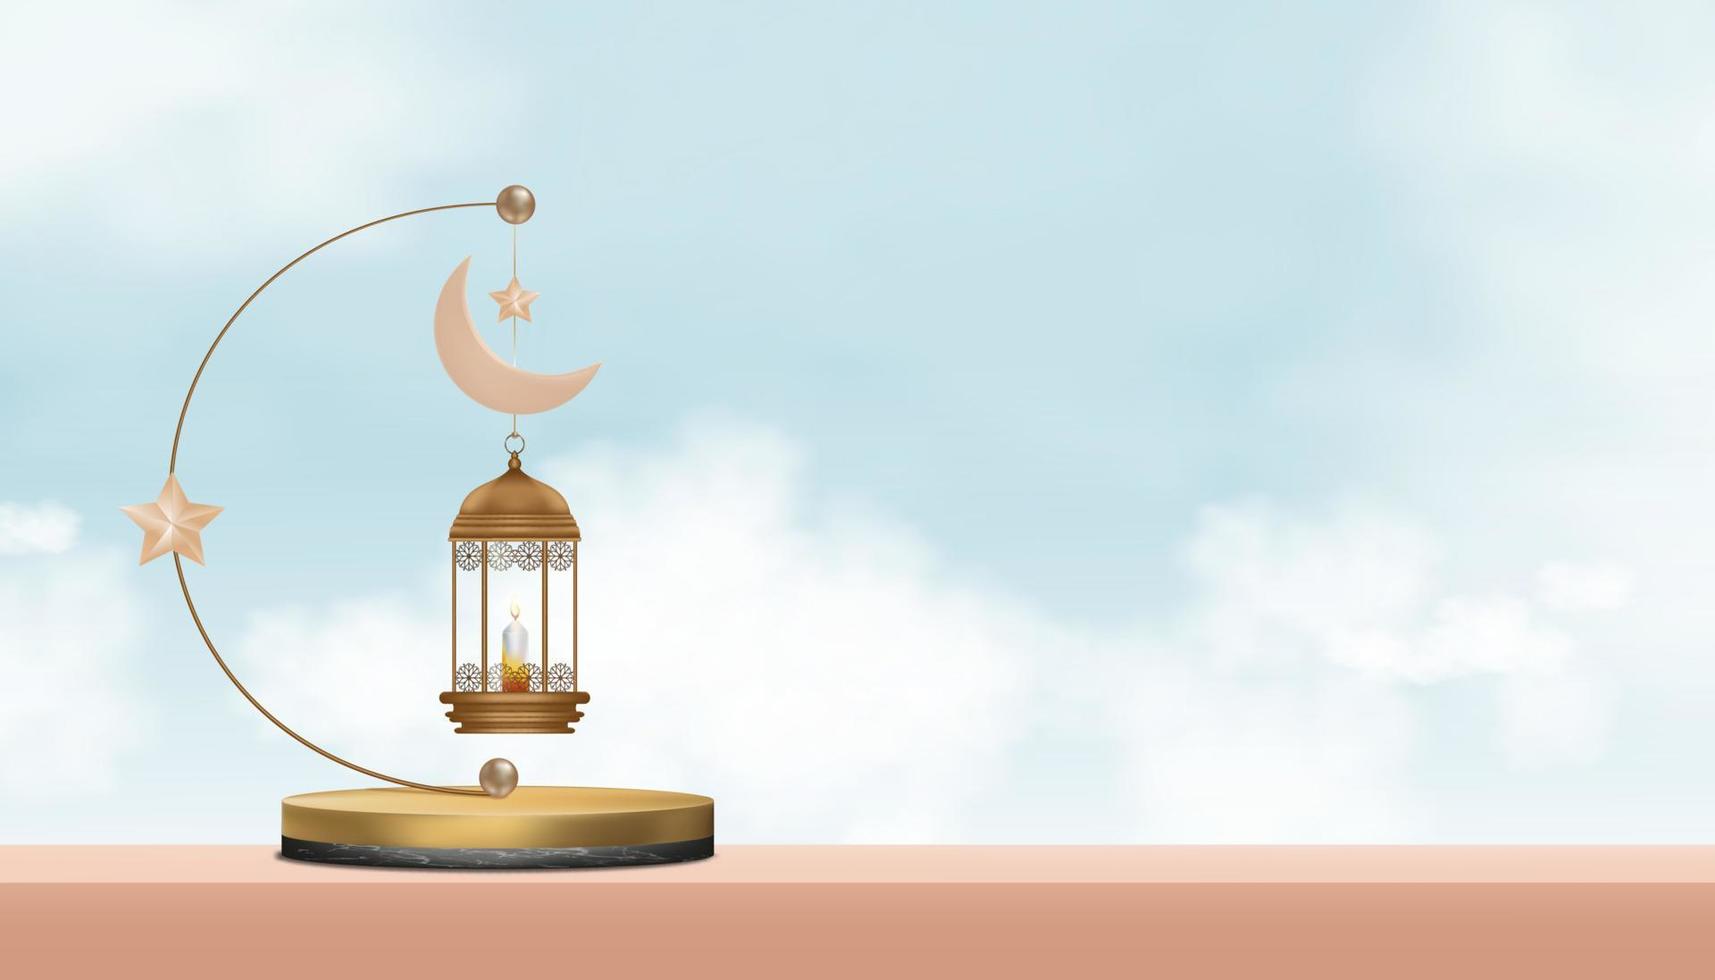 podium islamique avec lanterne 3d traditionnelle avec croissant de lune, étoile suspendue sur fond de ciel bleu, toile de fond vectorielle de la religion de la symbolique musulmane, eid ul fitr, ramadan kareem, eid al adha, eid mubarak vecteur